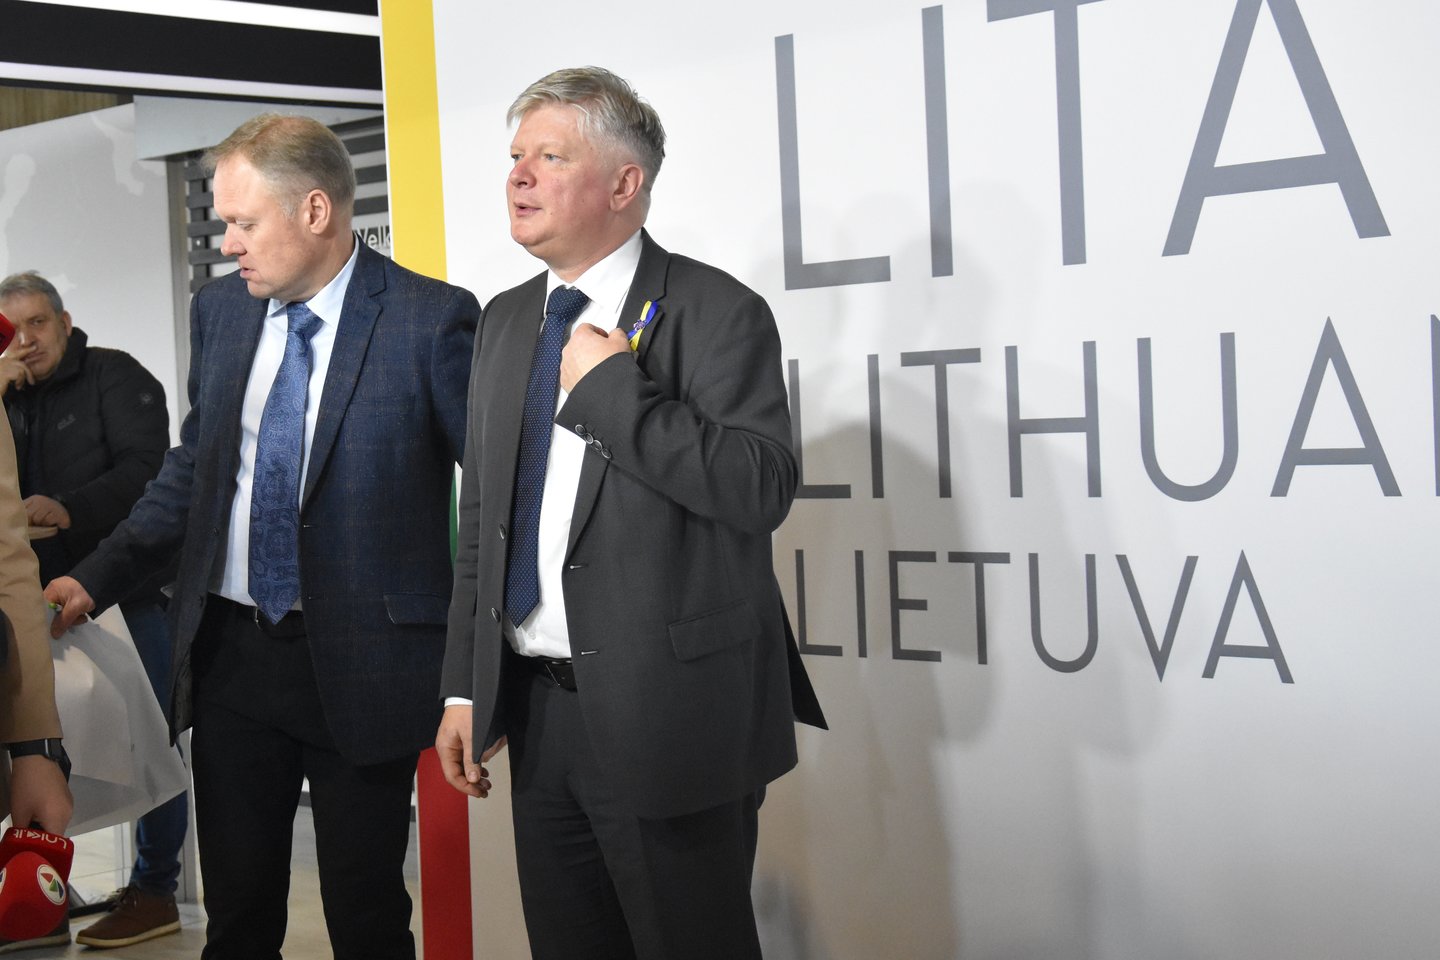 Ukrainos ir Lietuvos delegacijų susitikime svarbiausias akcentas – grūdų eksportui iš Ukrainos.